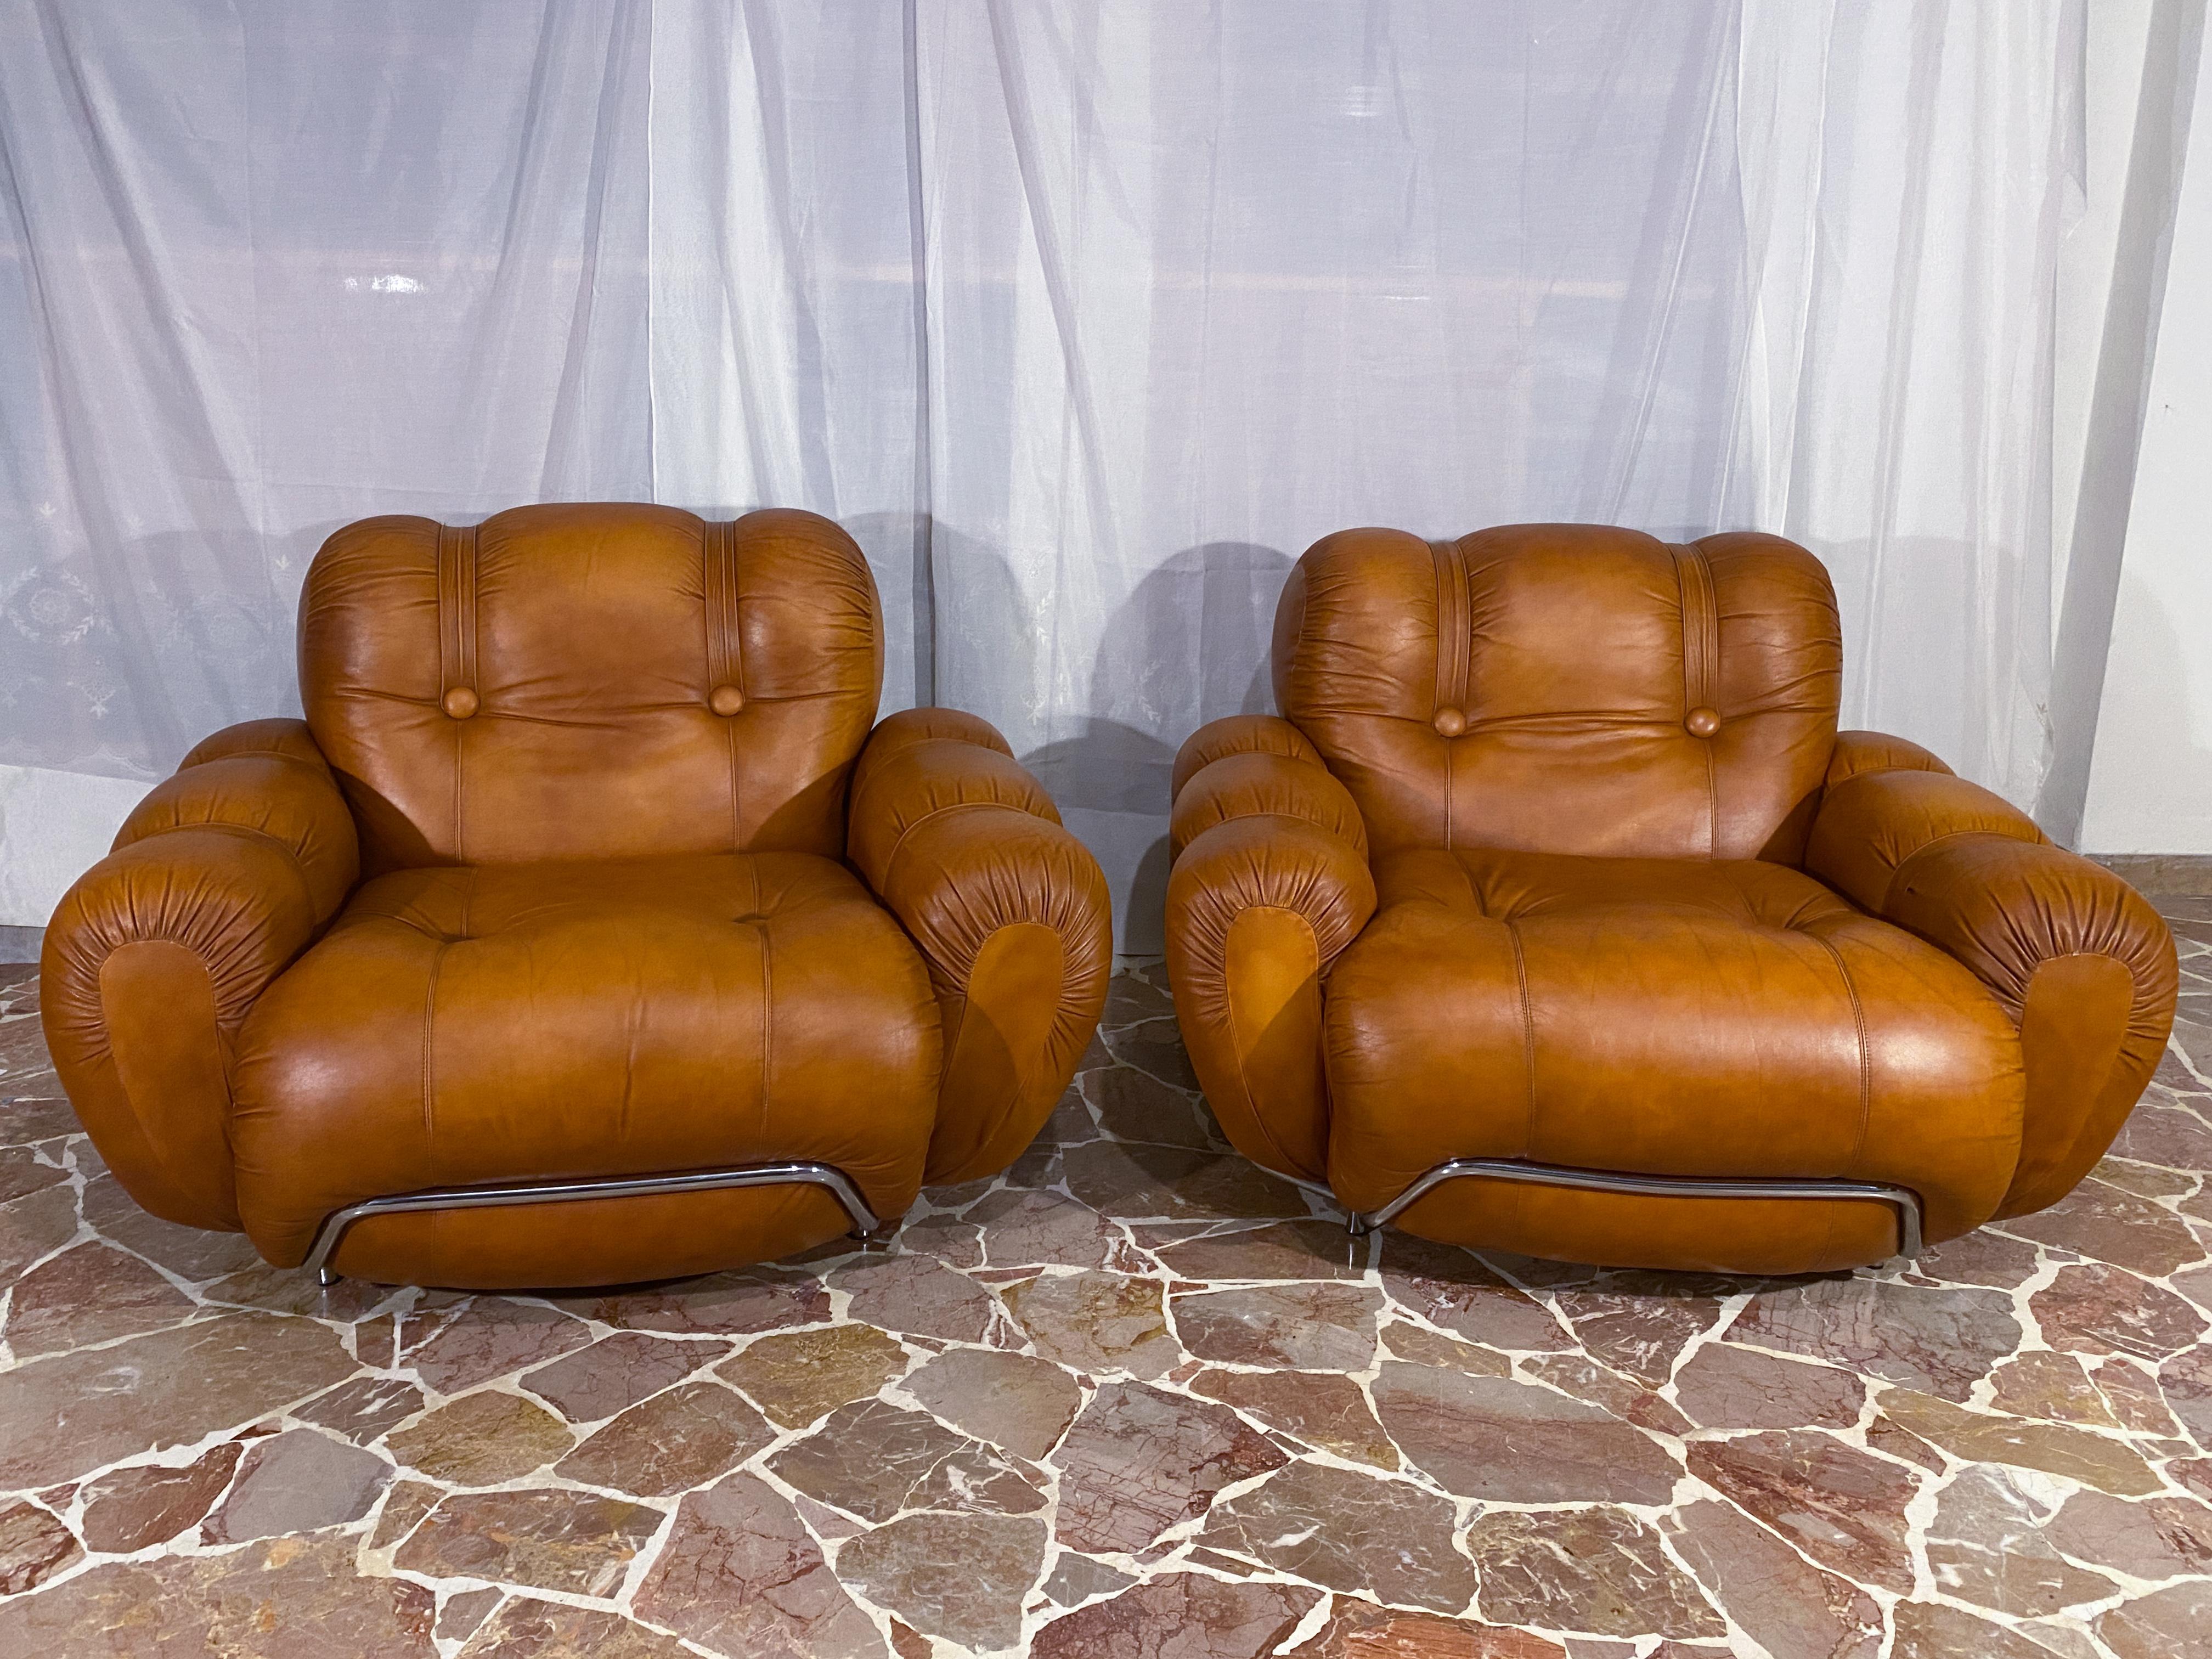 Prächtige Wohnzimmergarnitur bestehend aus dem Dreisitzer-Sofa und einem Paar Sesseln, die in den 70er Jahren in Italien hergestellt wurden. Die Sitze sind sehr bequem und stützend. Die Pads sind noch original und in sehr gutem Zustand. Originaler